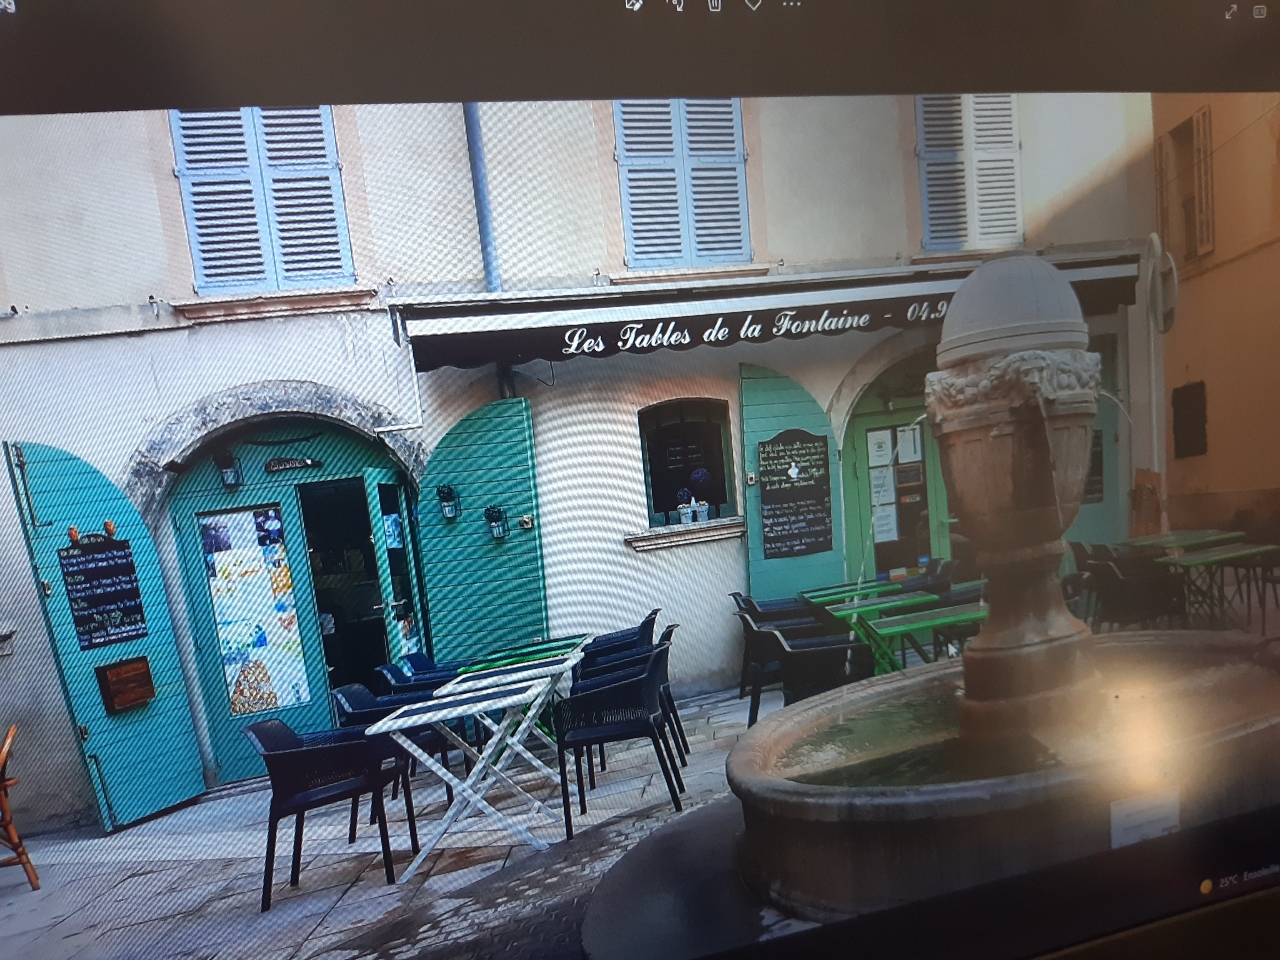 Vends fond de commerce, restauration traditionnelle, emplacement très agréable et calme, rue piétonne.  Dans le vieux centre de Toulon. 

https://www.google.com/maps/place/Pl.+Gustave+Lambert,+83000+Toulon/@43.1212611,5.9295092,17z/data=!3m1!4b1!4m5!3m4!1s0x12c91b0dbde0a8ad:0x3f8ad6d2fe5e53b3!8m2!3d43.1212611!4d5.9316979

Propriétaire mairie de Toulon, municipalité très arrangeante et disponible pour le développement du centre-ville. 
Capacité intérieure 28 places ainsi que 24 à 30 places extérieures suivant le droit de terrasse autorisé par la mairie. Réserve de 50 m carré à l’étage compris dans le bail. Etablissement très bien entretenu, prêt à être exploité. License boisson grande restauration -Tout le matériel mis en place nécessaire laissé au futur acquéreur. 
https://www.tripadvisor.fr/Restaurant_Review-g187257-d7885793-Reviews-Les_Tables_de_la_Fontaine-Toulon_Var_Provence_Alpes_Cote_d_Azur.html

Photos sur demande de l’intérieur, de la cuisine du bar, ainsi que la terrasse. 
Merci de me contacter, que les personnes sérieuses (disposant au moins de la moitié de l’apport entre 70000 et 85 000 €). Curieux s’abstenir, contact seulement par mail pour d’autres questions.
Aucun document ne sera envoyé ou présenté sans une rencontre sur site. 
lestablesdelafontaine83@gmail.com

Vends fonds de commerce, restauration traditionnelle, emplacement très agréable et calme, rue piétonne.  Dans le vieux centre de Toulon. 

Propriétaire mairie de Toulon, municipalité très arrangeante et disponible pour le développement du centre-ville.  Droit de regard sur futur acquéreur sur le projet proposé – Loyer raisonnable - 

Actuellement géré par 1 couple, 1 apprenti cuisine et deux mi-temps - Pas de personnel à reprendre - 
Capacité intérieure 28 places ainsi que 24 à 30 places extérieures suivant le droit de terrasse autorisé par la mairie. Réserve de 50 m carré à l’étage compris dans le bail. Etablissement très bien entretenu, prêt à être exploité. License boisson grande restauration -Tout le matériel mis en place nécessaire laissé au futur acquéreur. Liste sur demande - 

Photos sur demande : de l’intérieur, de la cuisine du bar, ainsi que la terrasse. 
PHOTOS ACTUELLES TROP LOURDES .

Merci de me contacter, que les personnes sérieuses. Curieux s’abstenir, Prix négociable – pour le moment pas d’agence donc 8 % de frais en moins. 
Contact seulement par mail pour d’autres questions.
Aucun document ne sera envoyé ou présenté sans une rencontre sur site. 
lestablesdelafontaine83@gmail.com